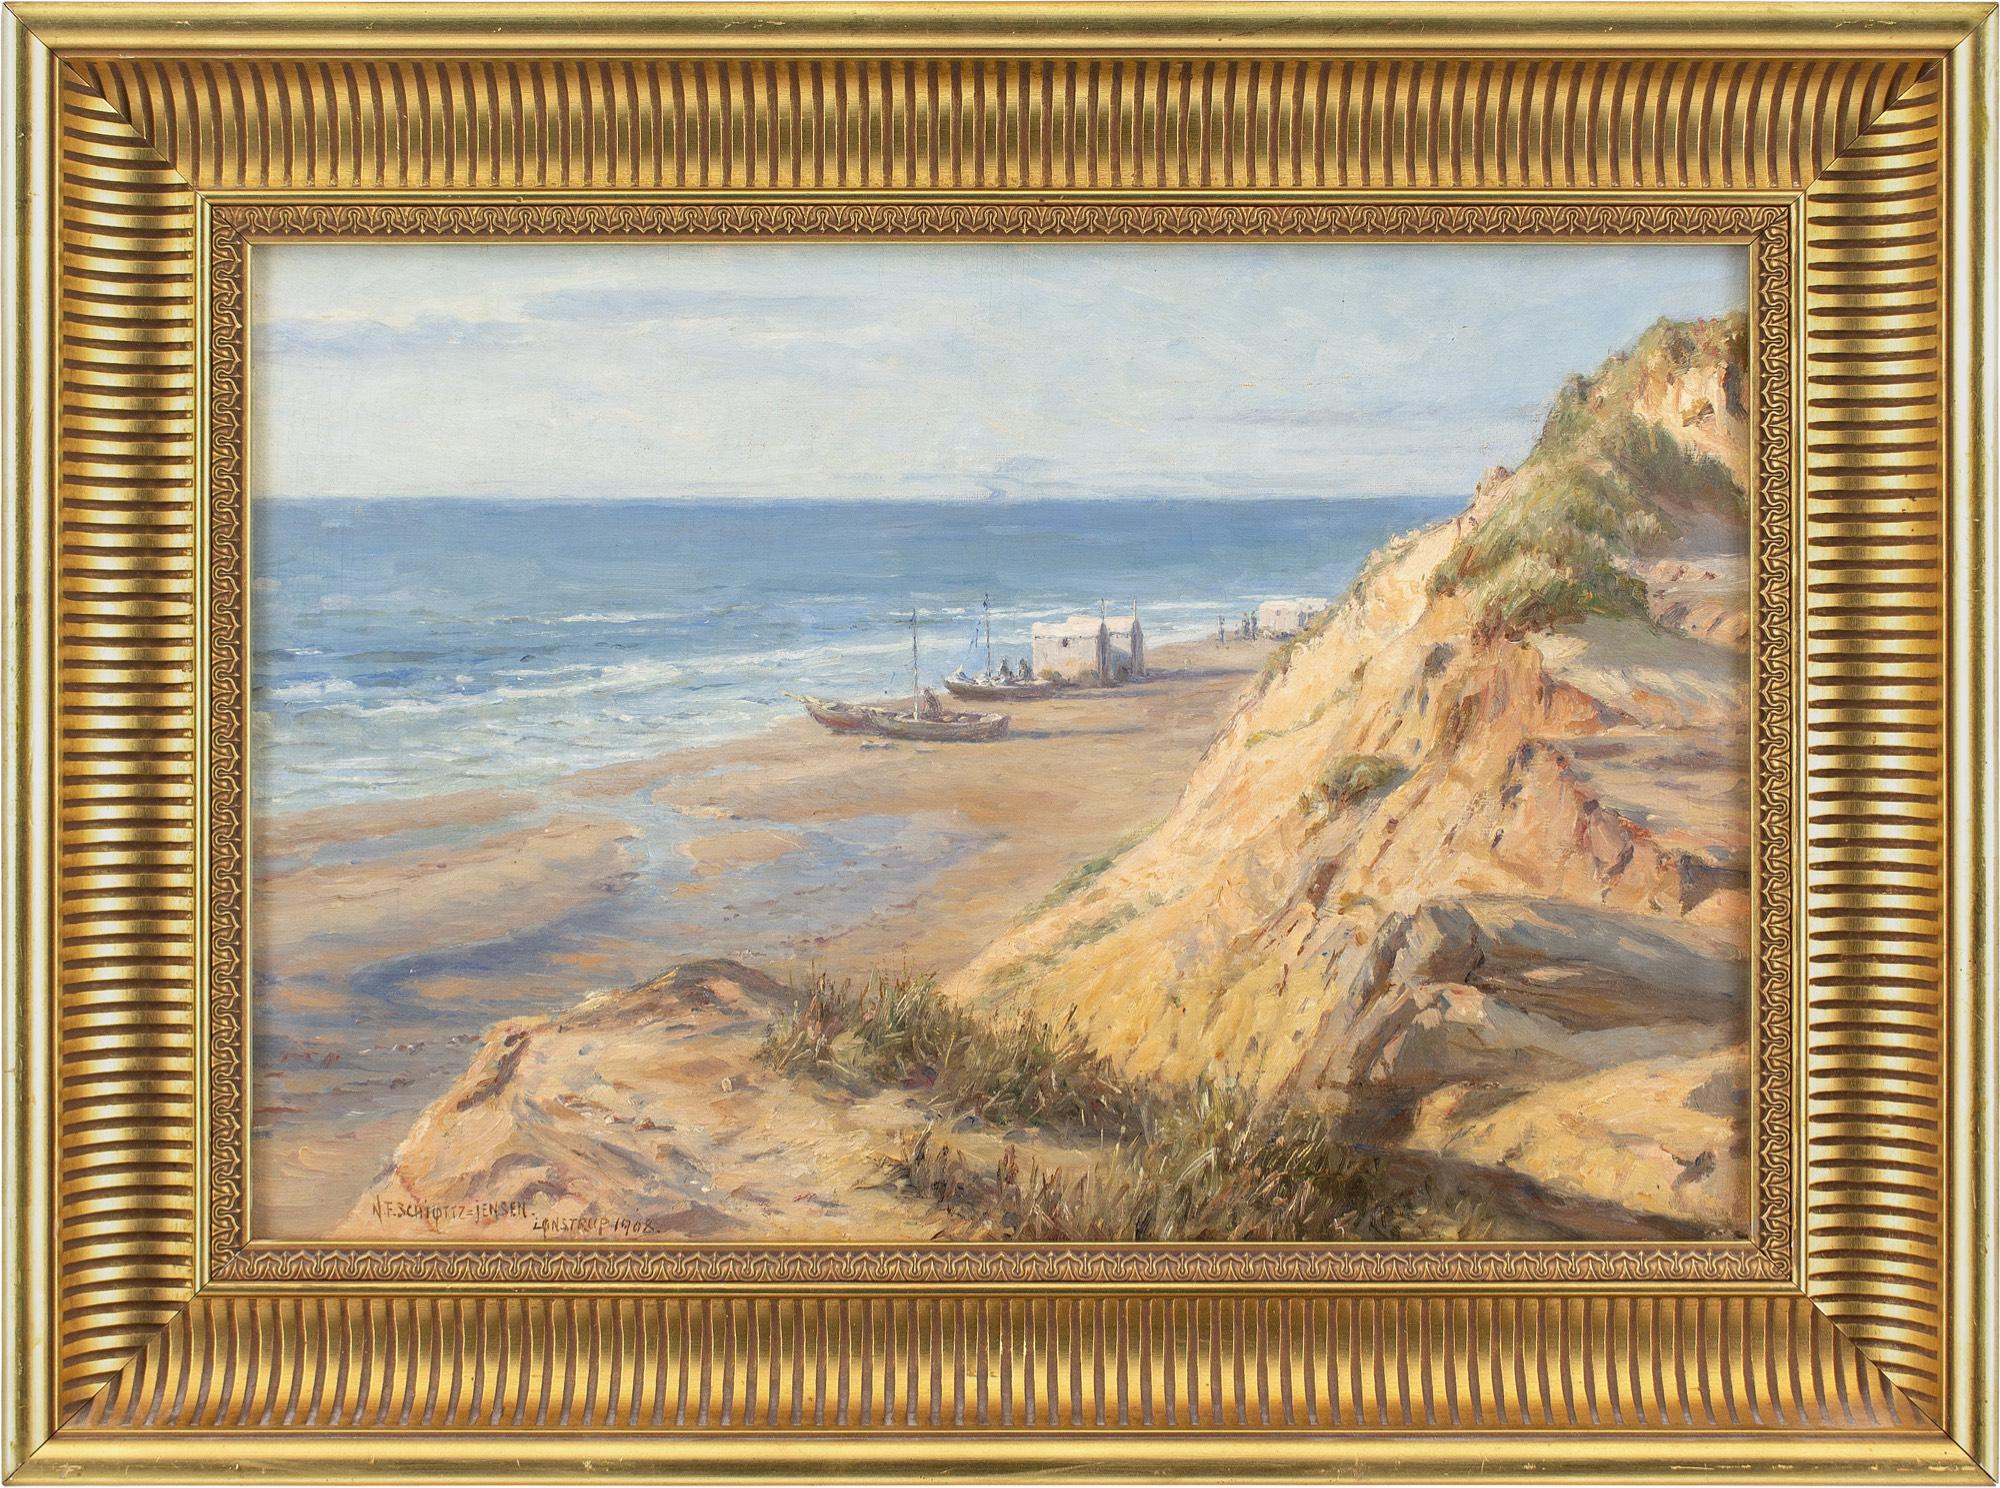 Dieses Ölgemälde des dänischen Künstlers Niels Frederik Schiøttz-Jensen (1855-1941) aus dem frühen 20. Jahrhundert zeigt eine malerische Ansicht des Strandes von Lønstrup, Jütland.

Von unserem Aussichtspunkt oben auf den Klippen ist der Strand mit